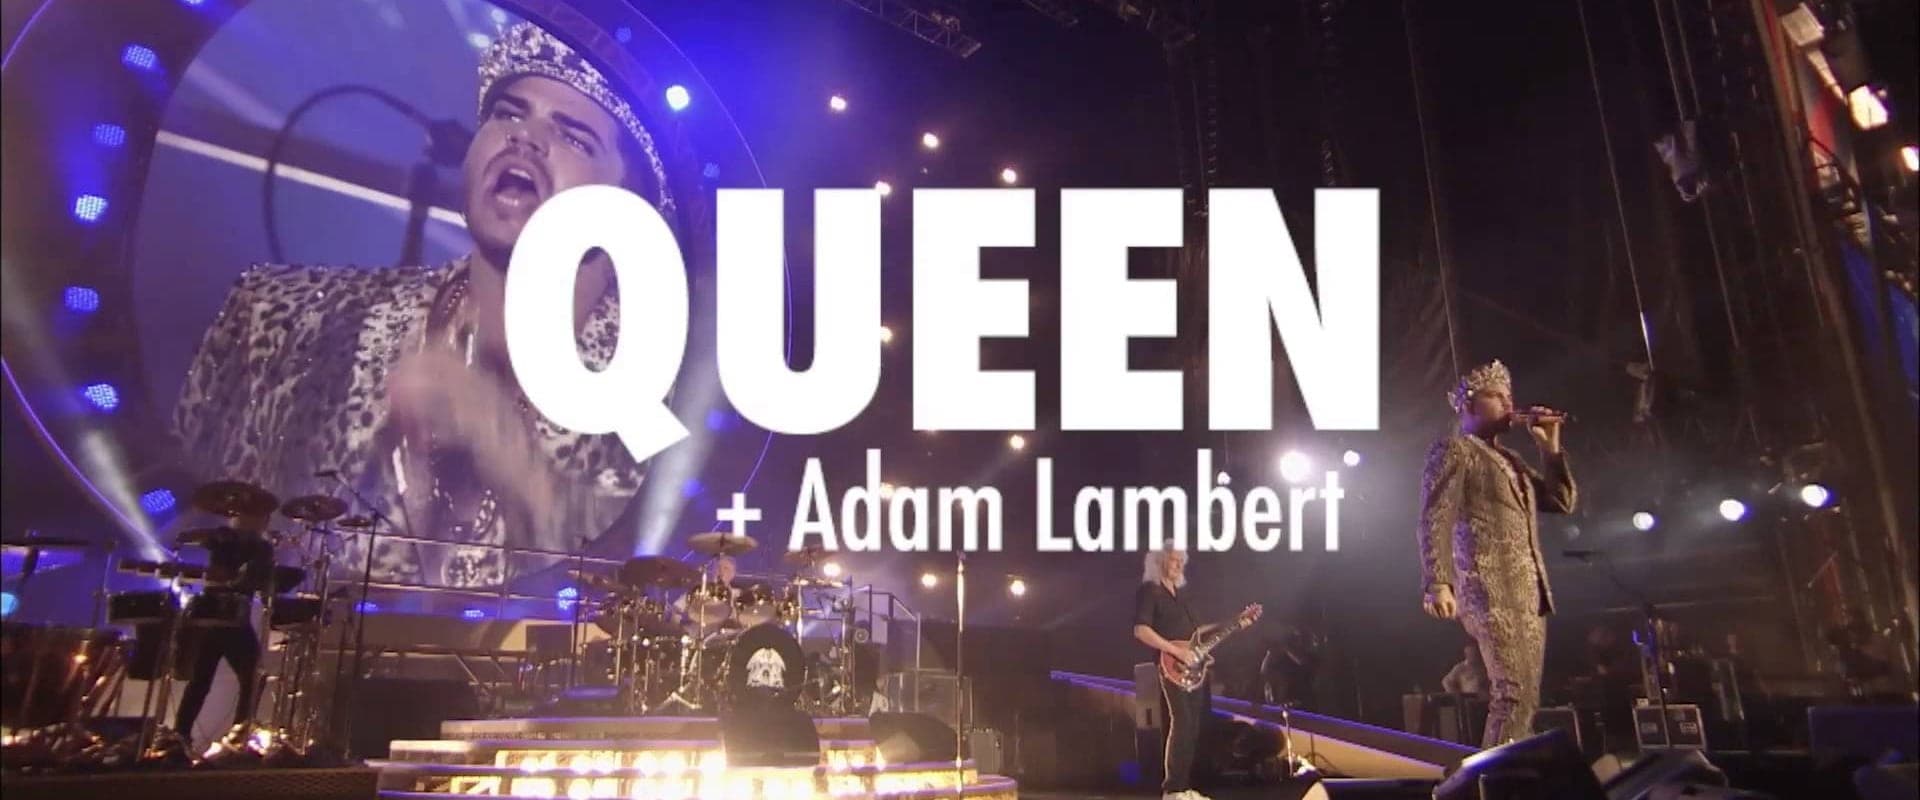 Queen & Adam Lambert: Rock in Rio (Lisboa)